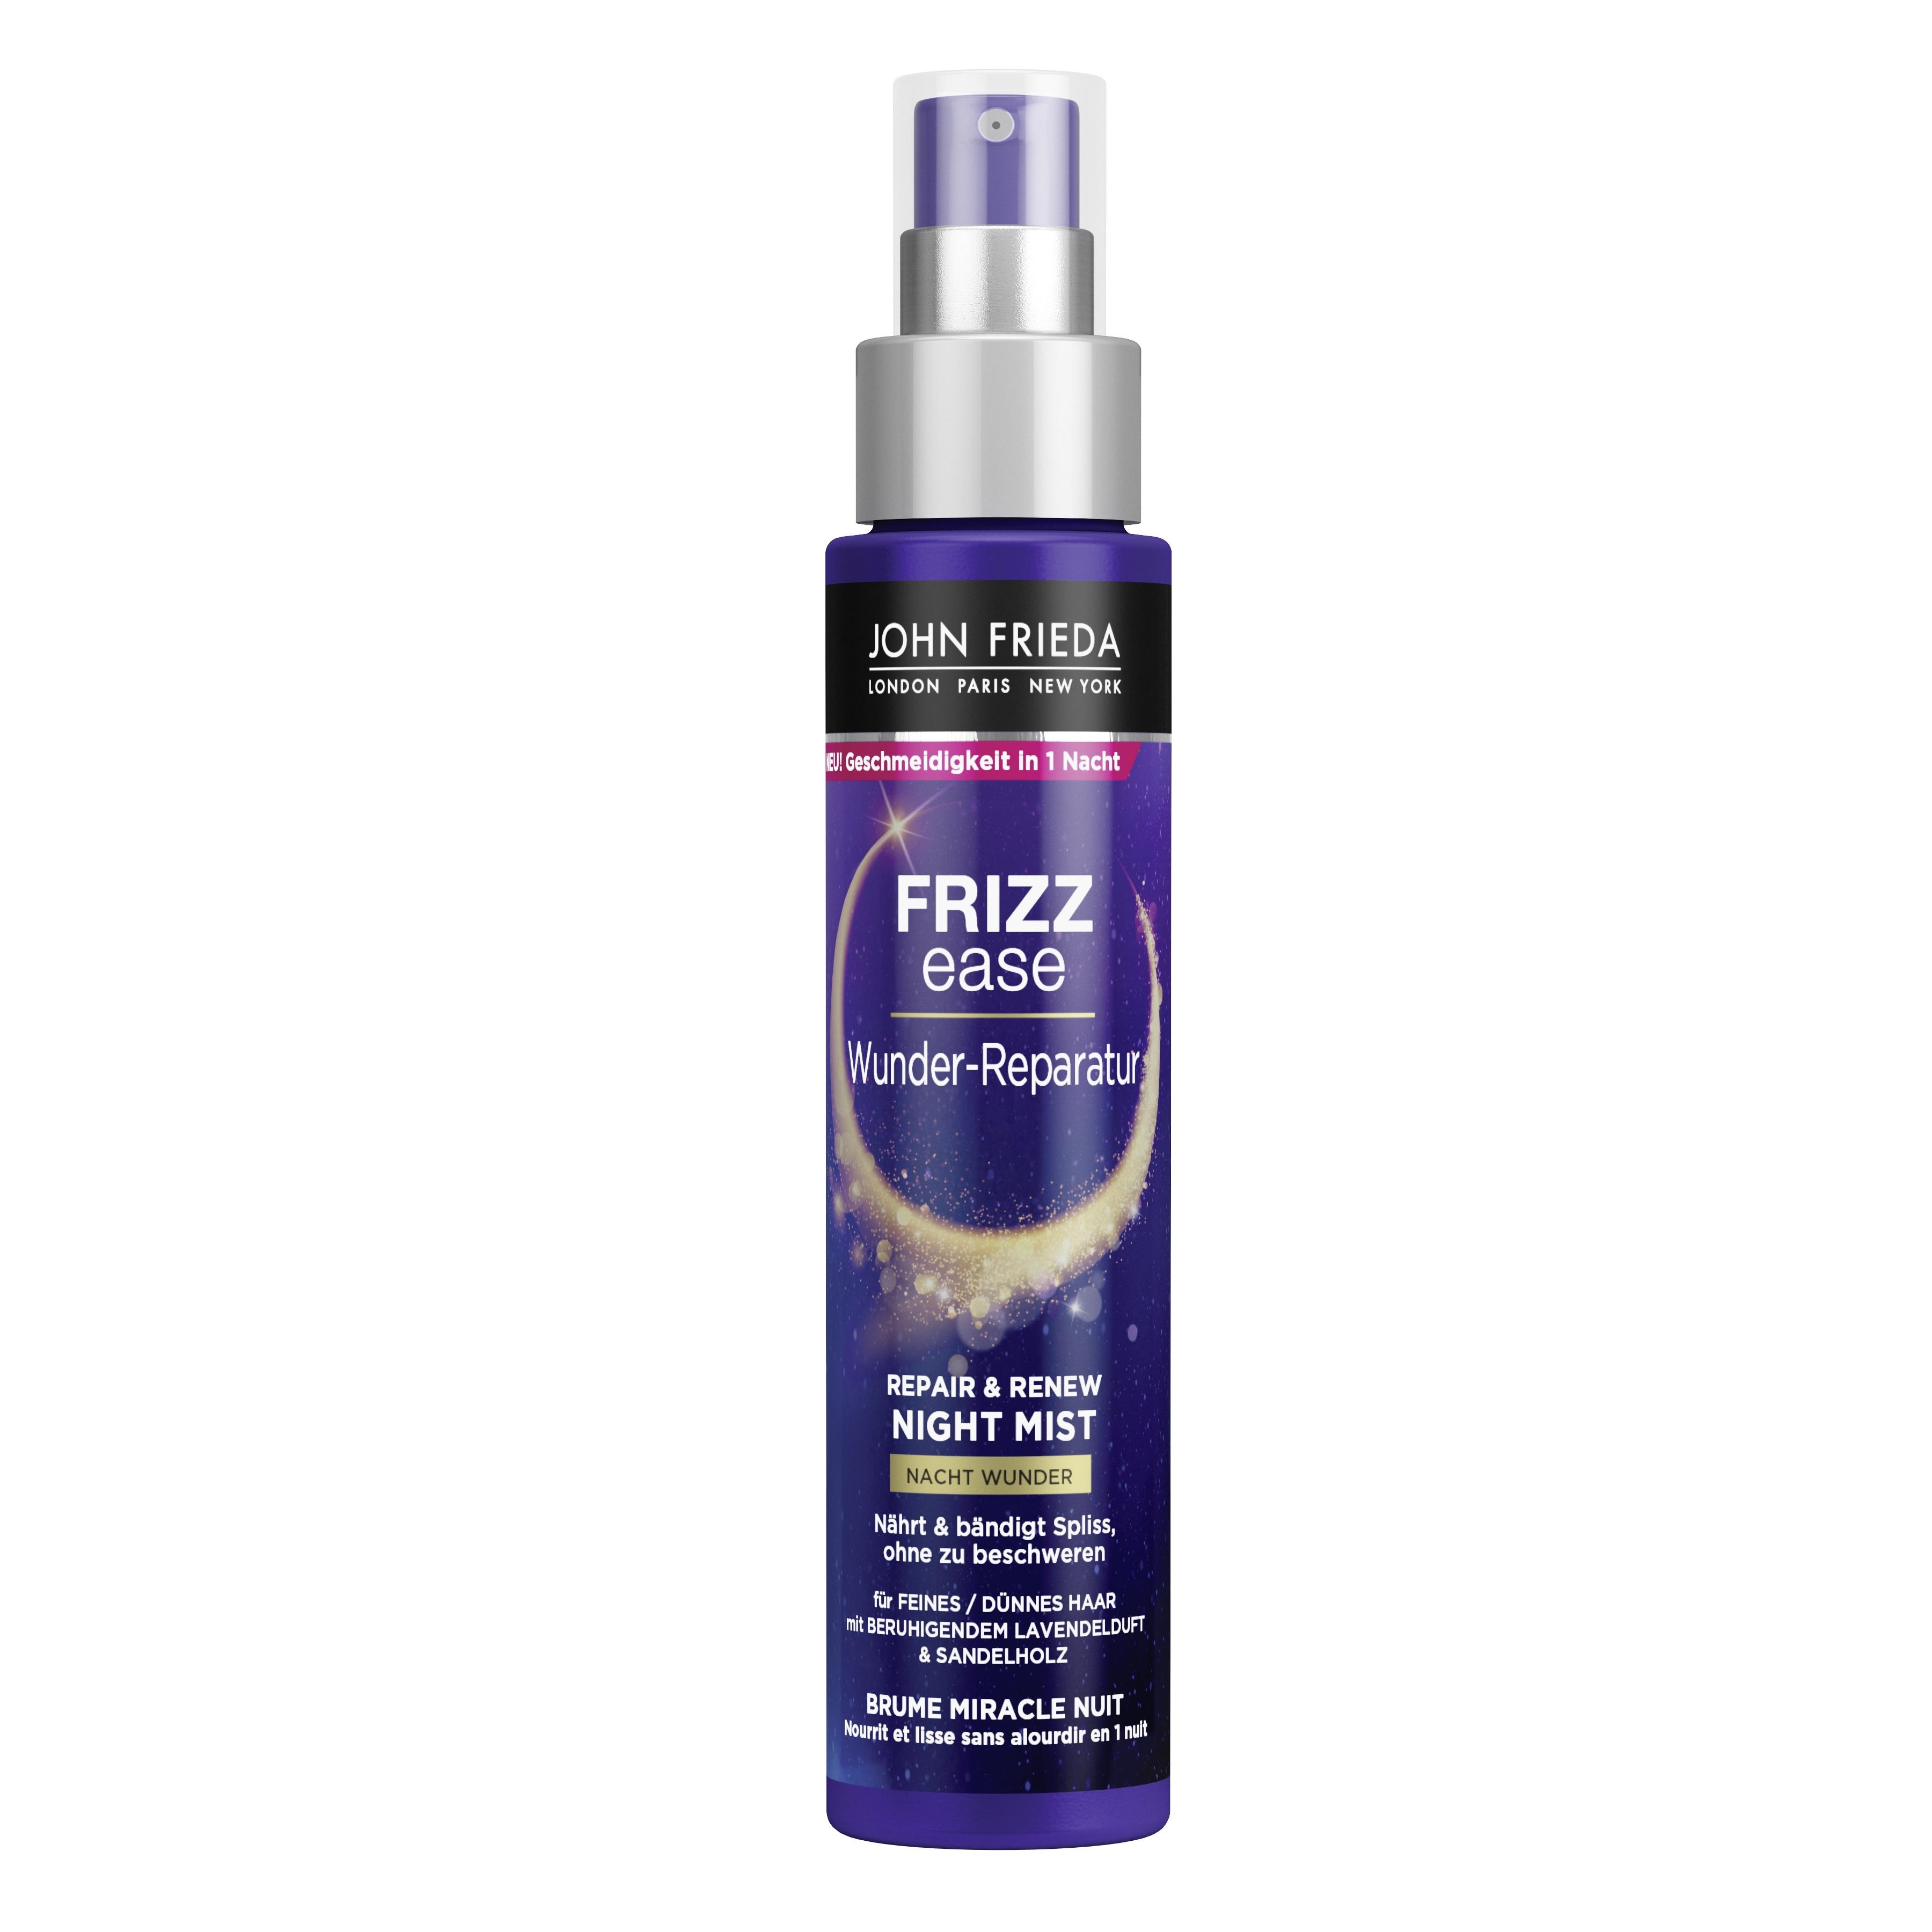 Produktbild von Frizz Ease - Wunder-Reparatur Nacht Wunder Feuchtigkeitsspray